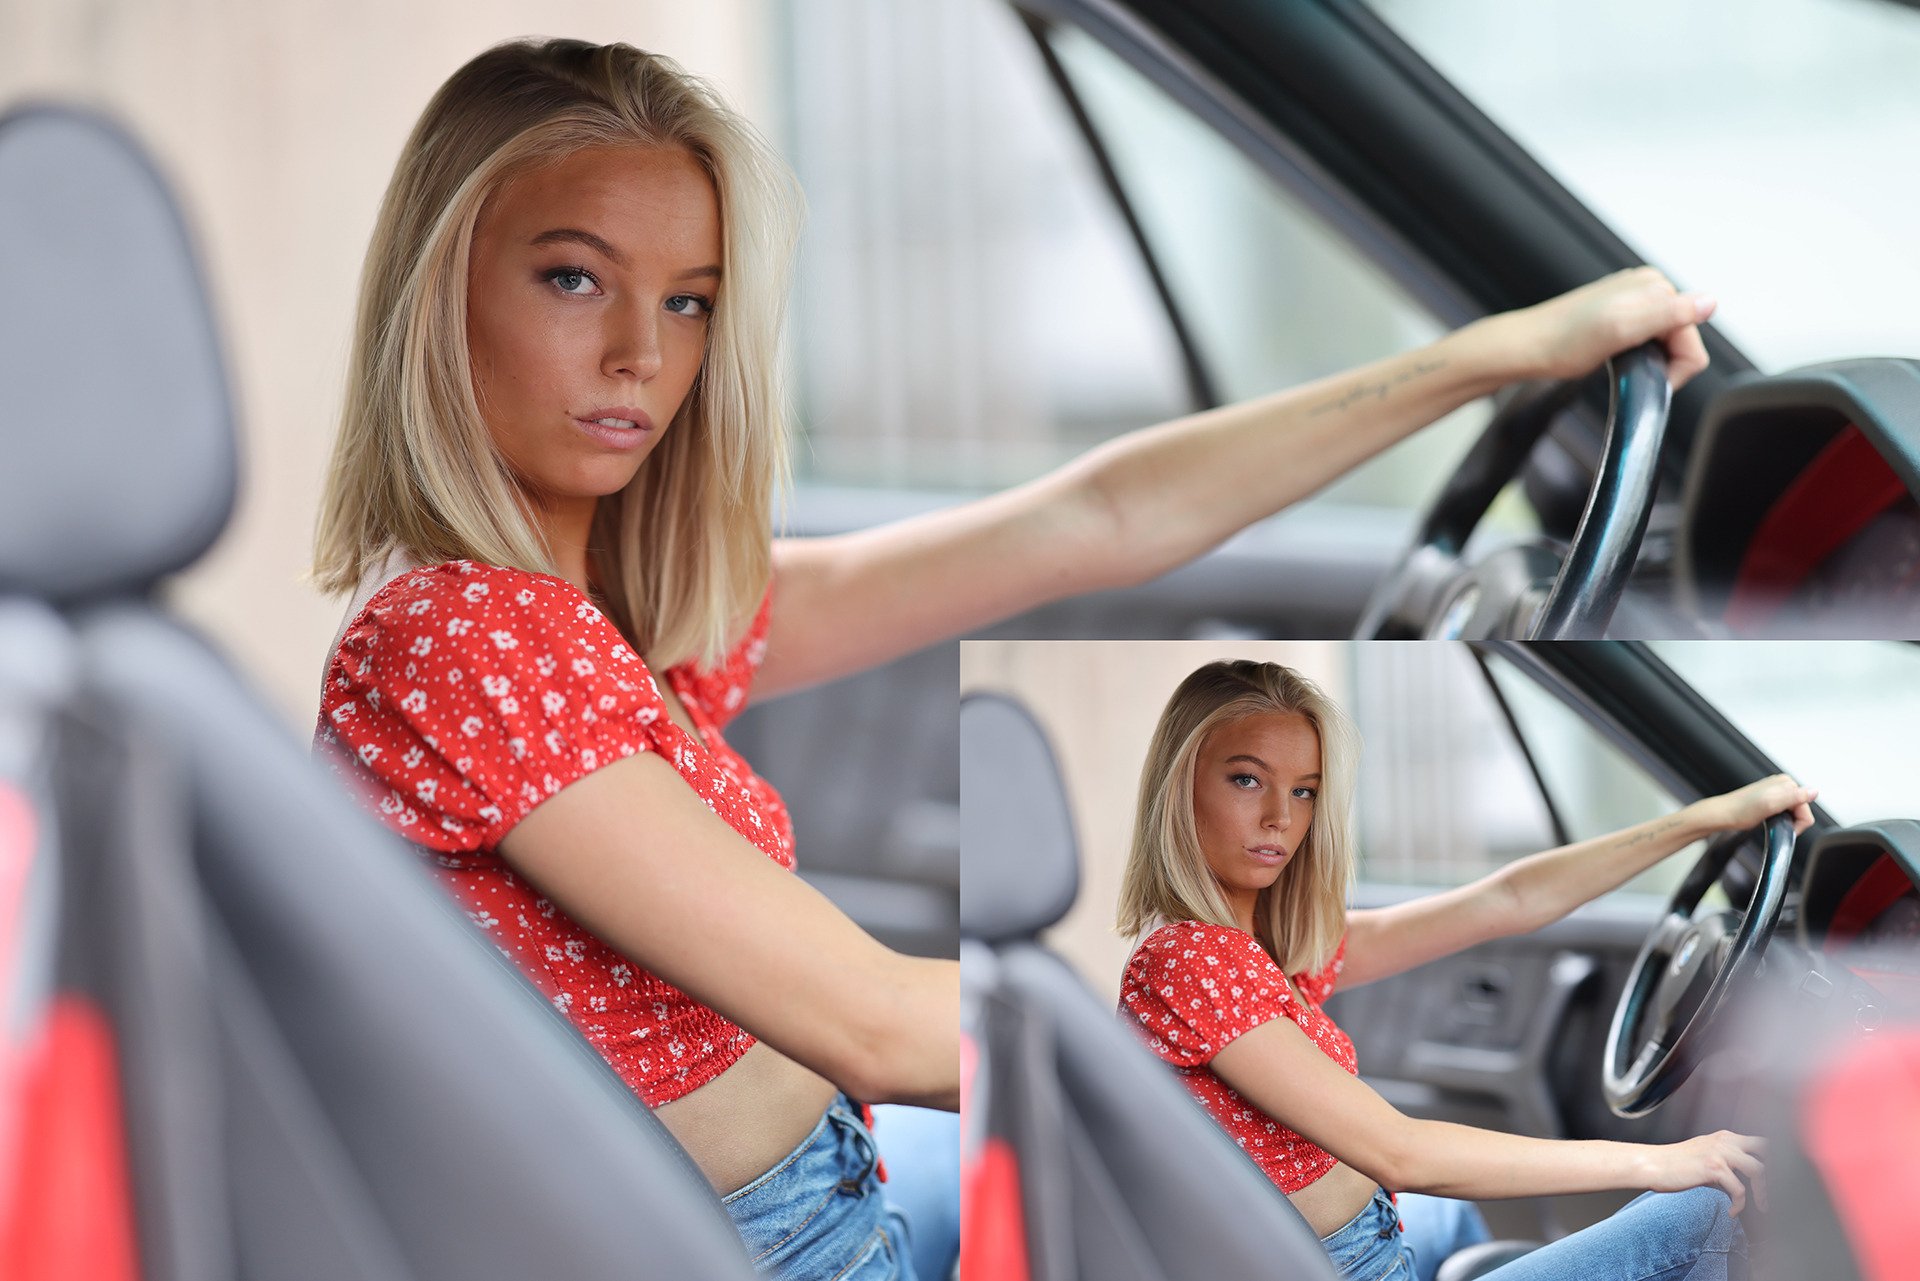 Foto ampliada de un modelo femenino en un automóvil clásico, con foto original en el interior para mostrar el tamaño.